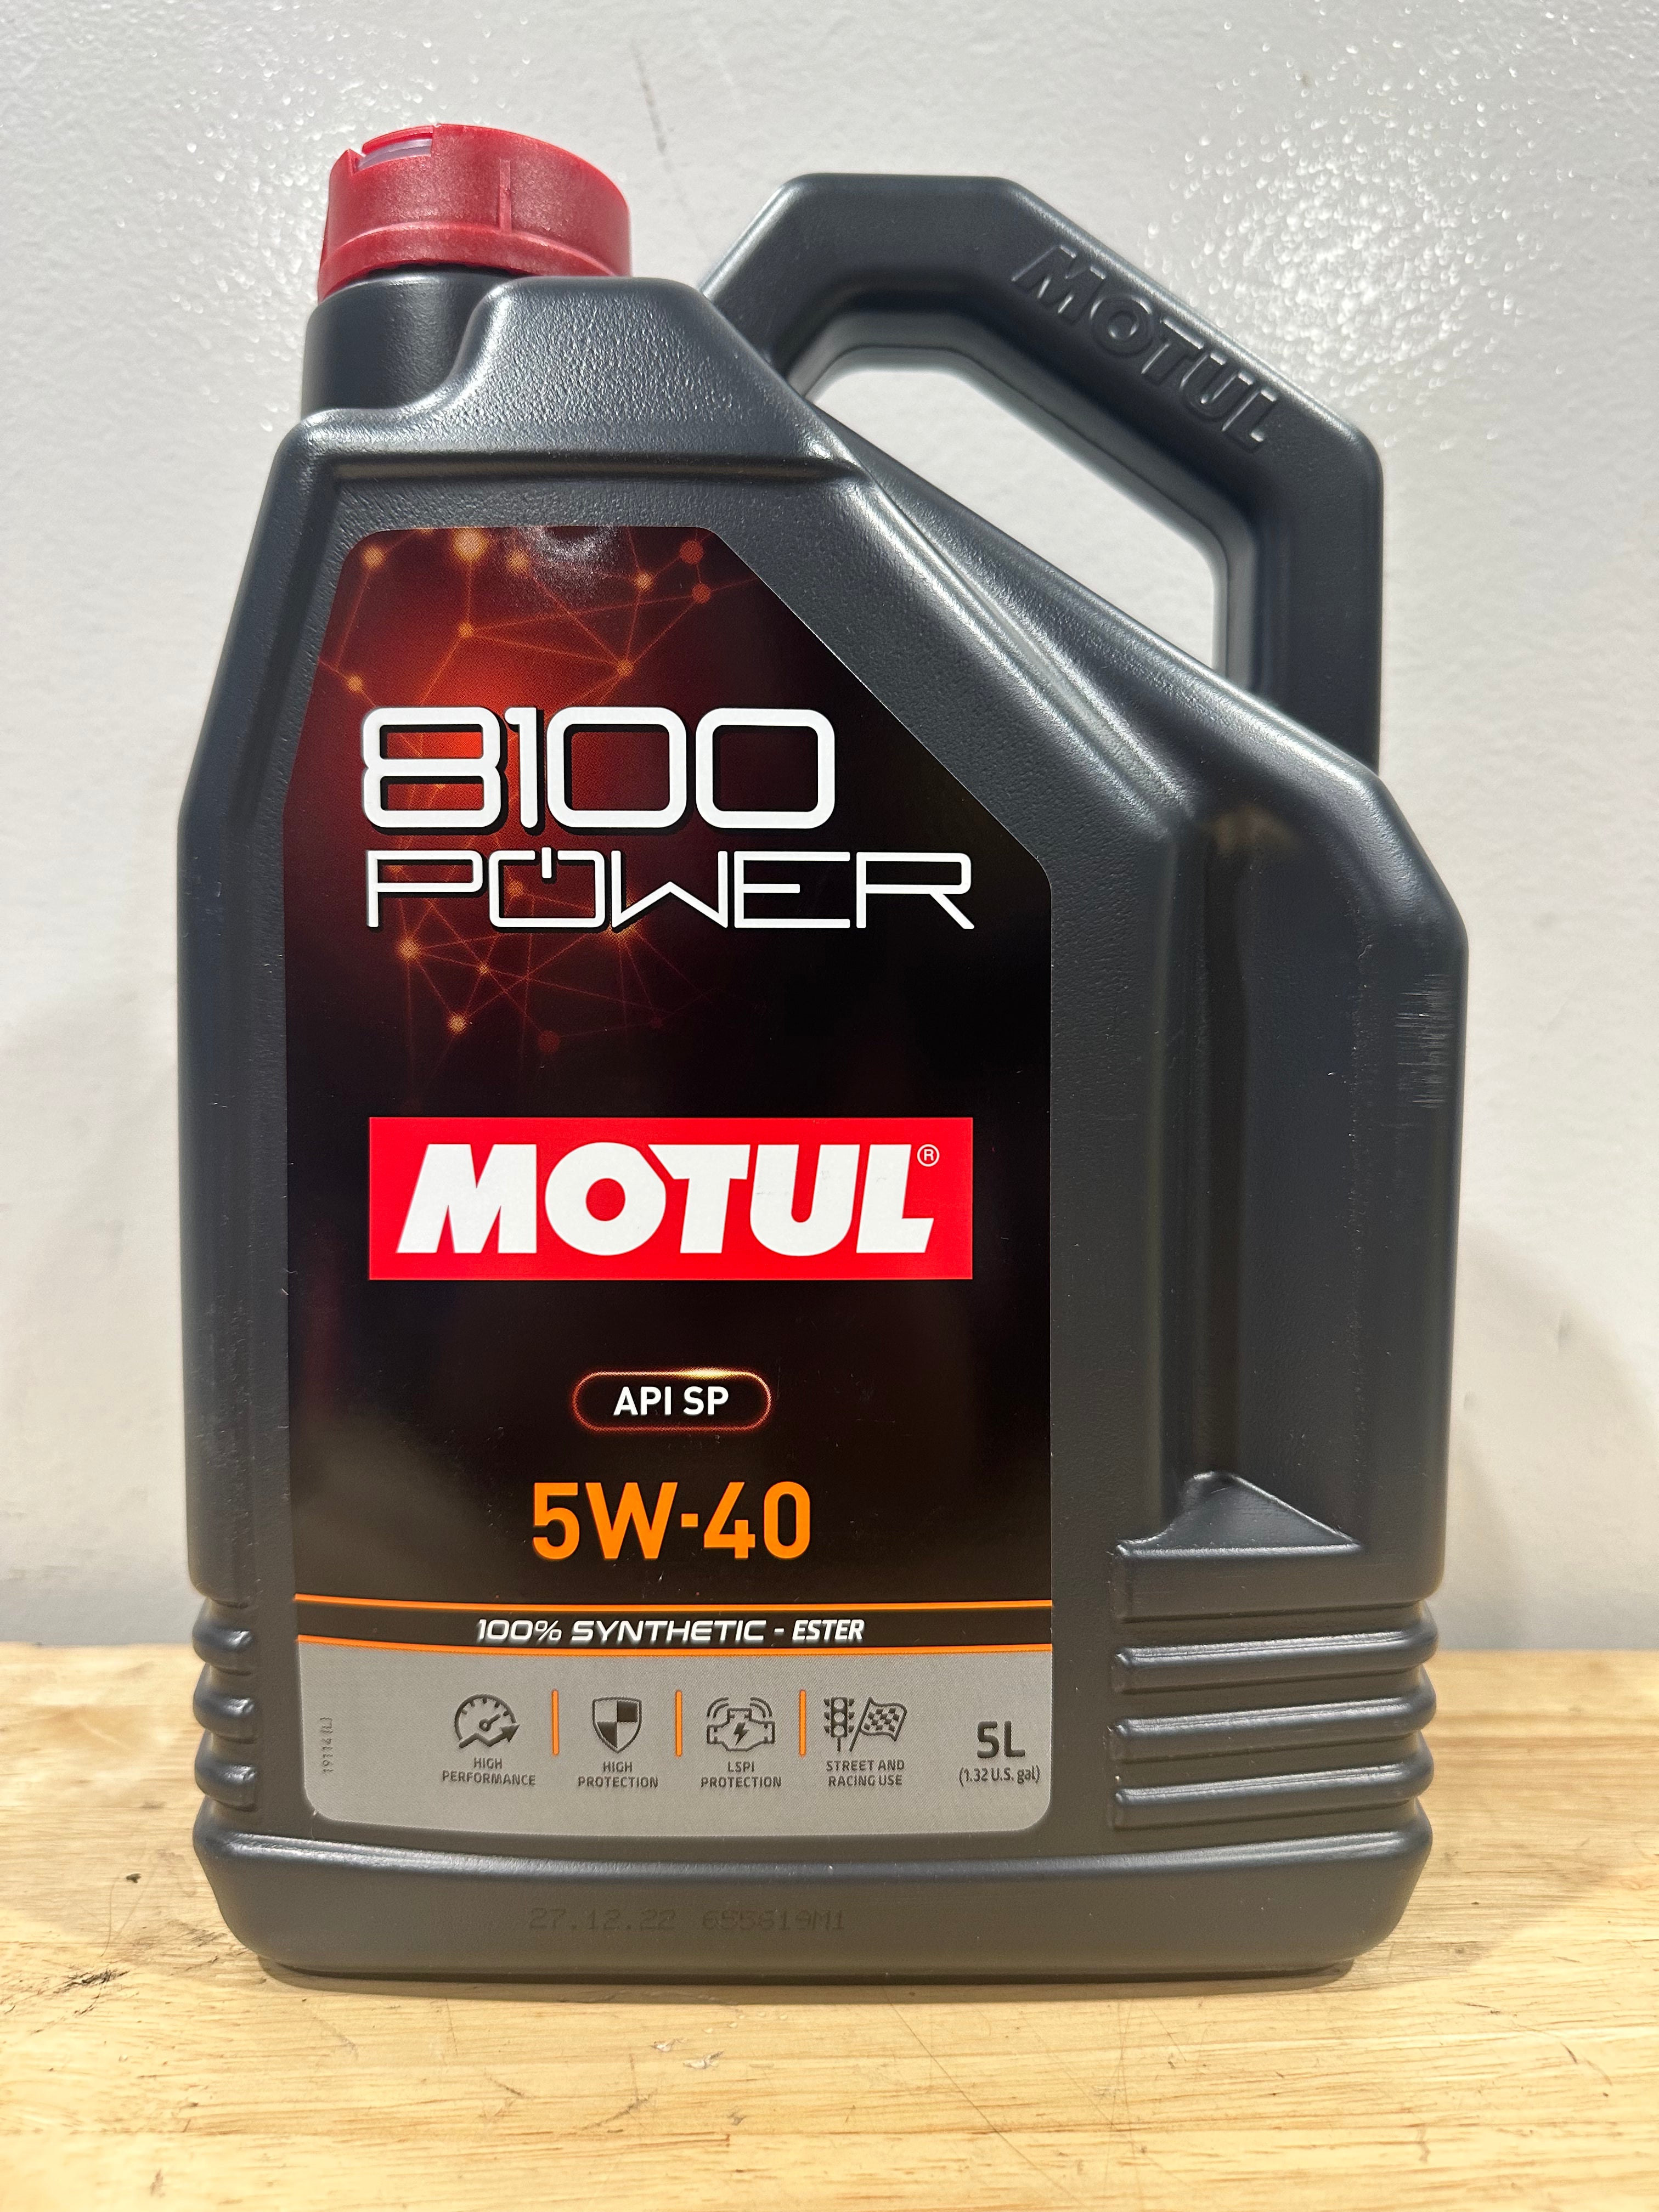 Motul Full Synthetic 5W-40 8100 Power 5L